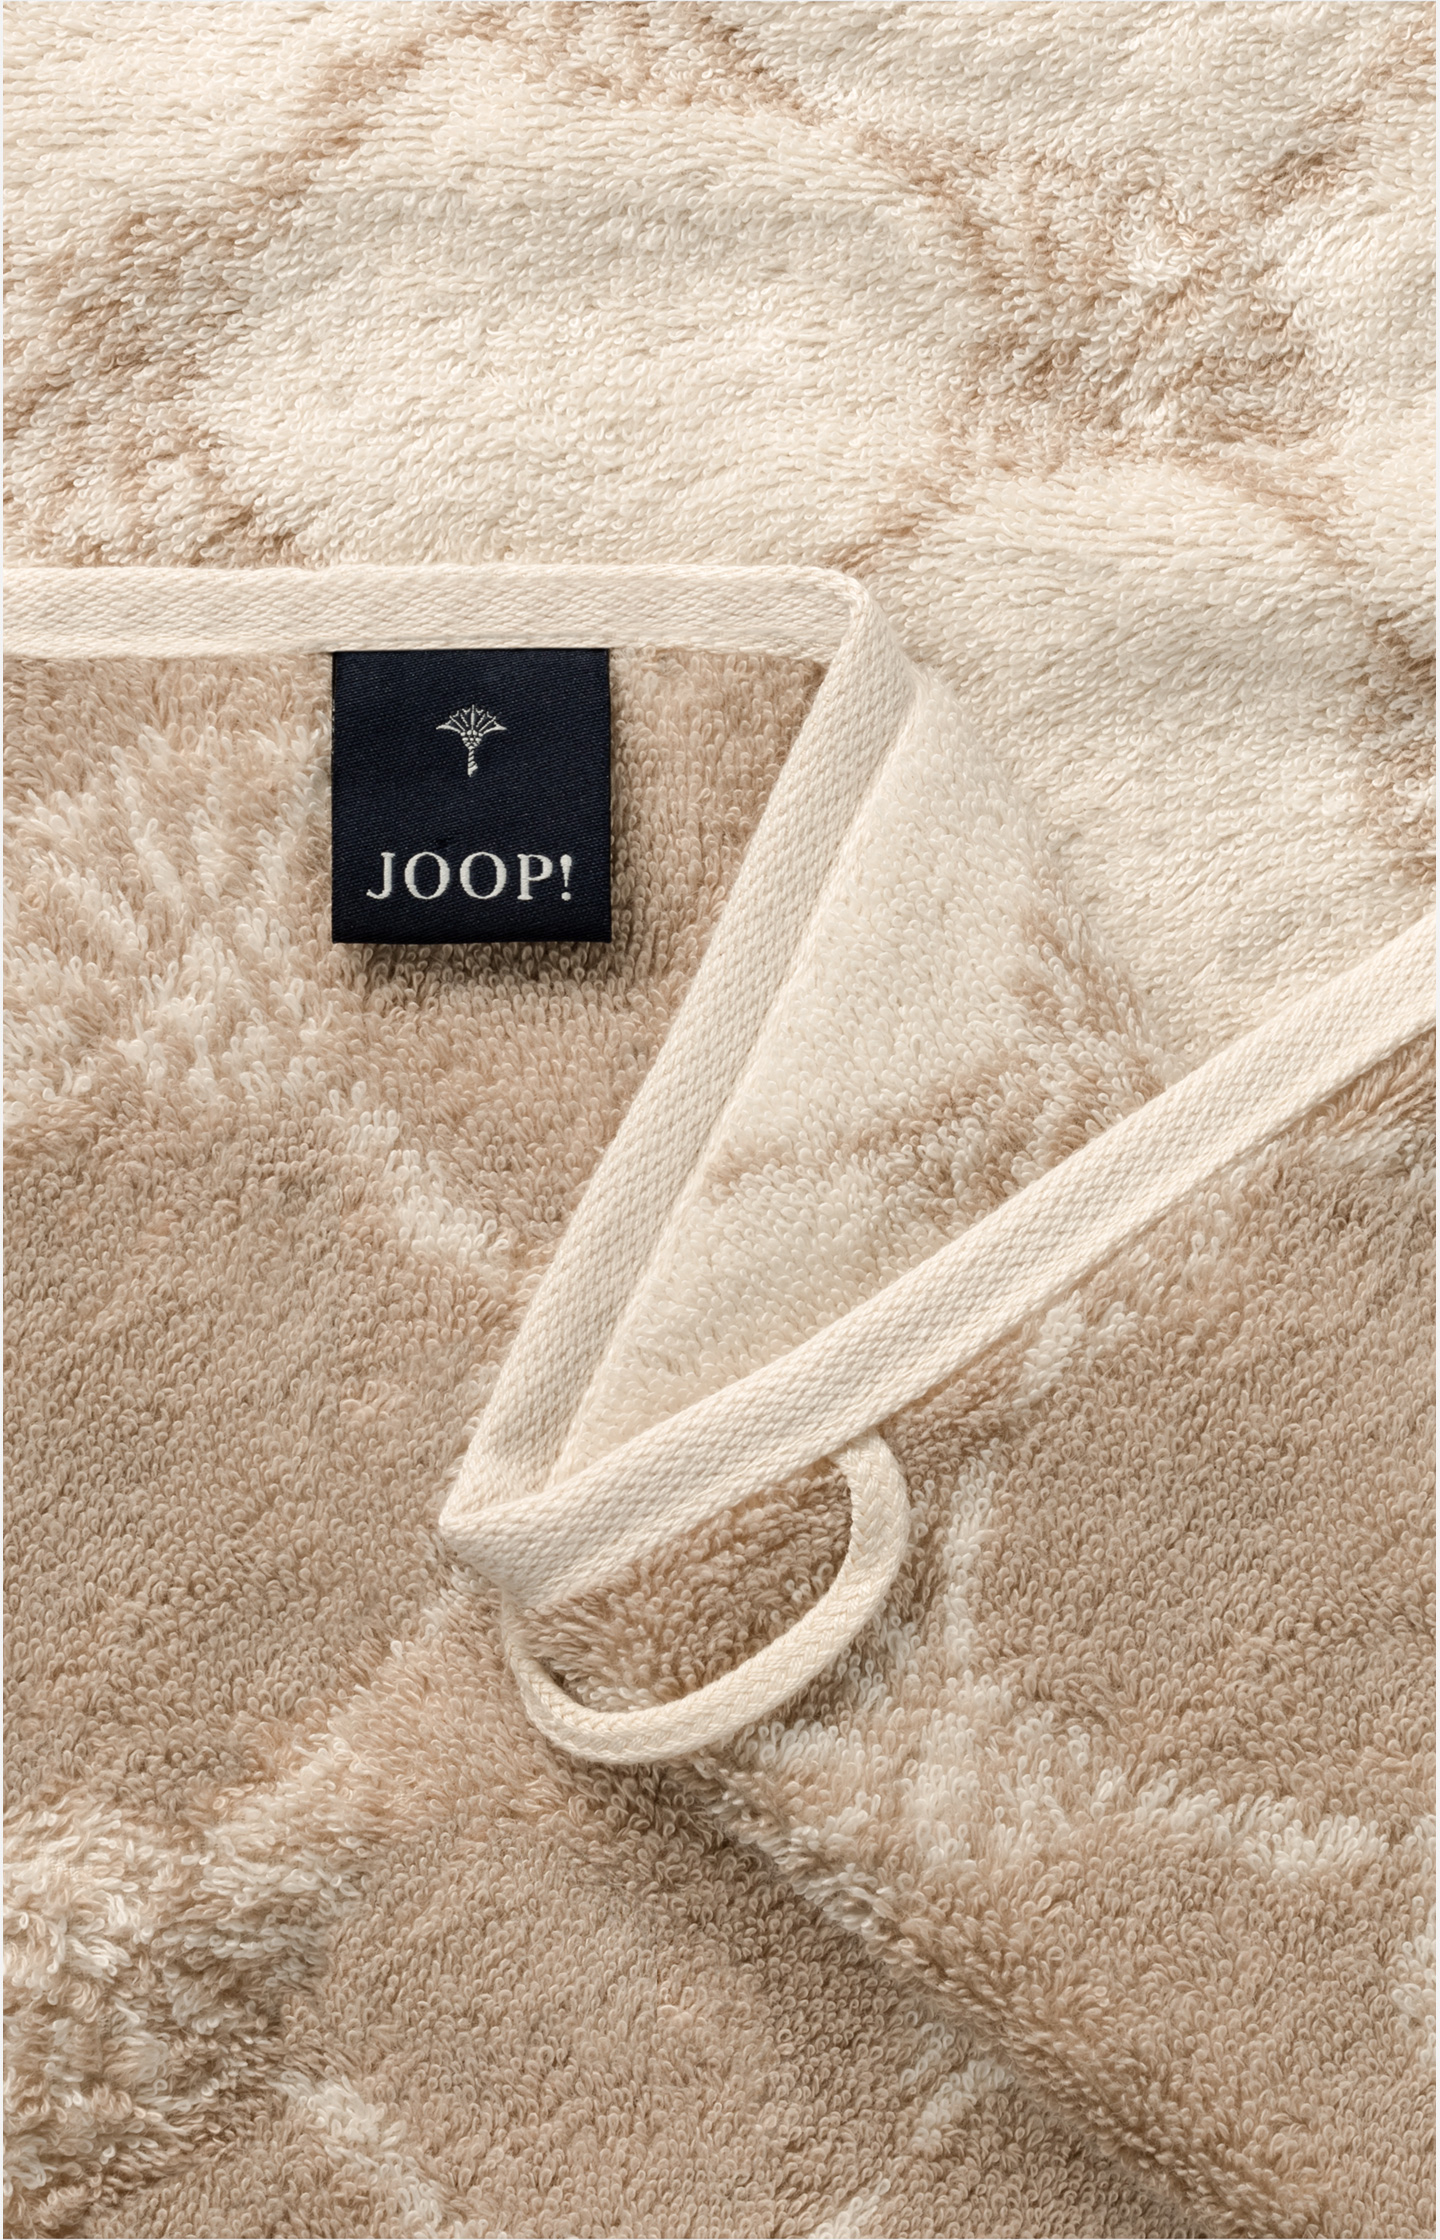 JOOP! CLASSIC CORNFLOWER Towel Cream JOOP! in Online in the - Shop